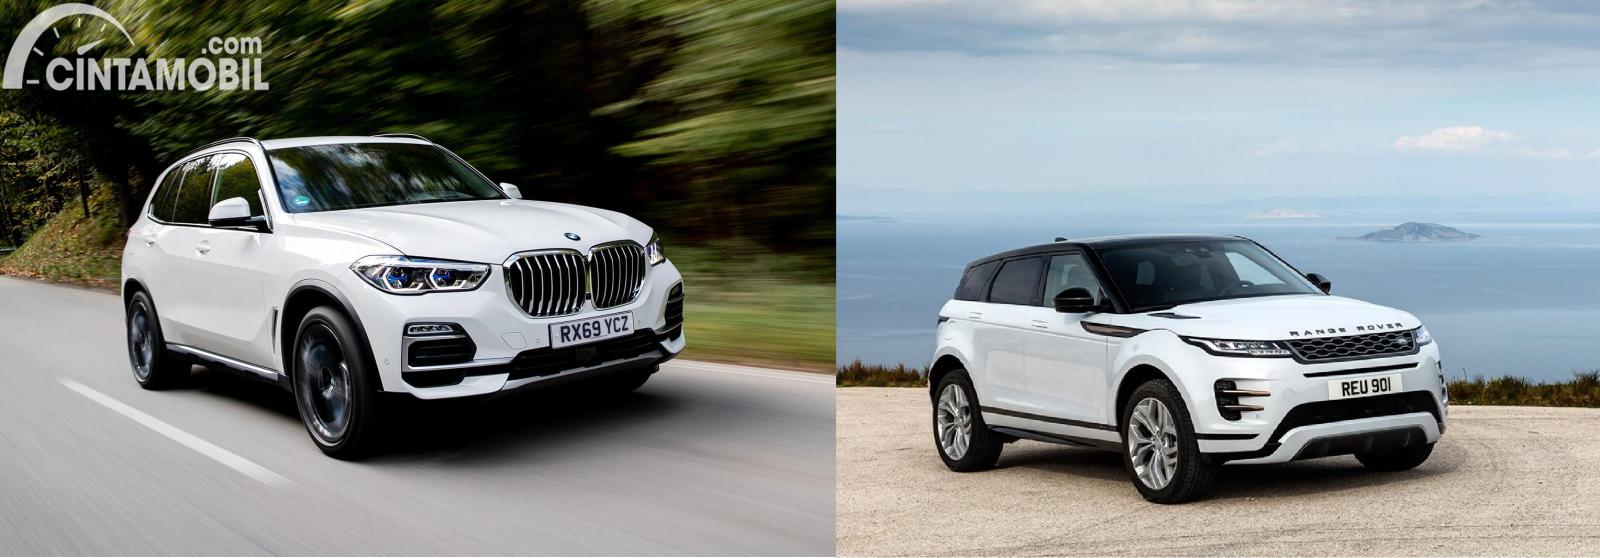 Gambar menunjukkan bandingkan antara BMW X5 vs Range Rover Evoque